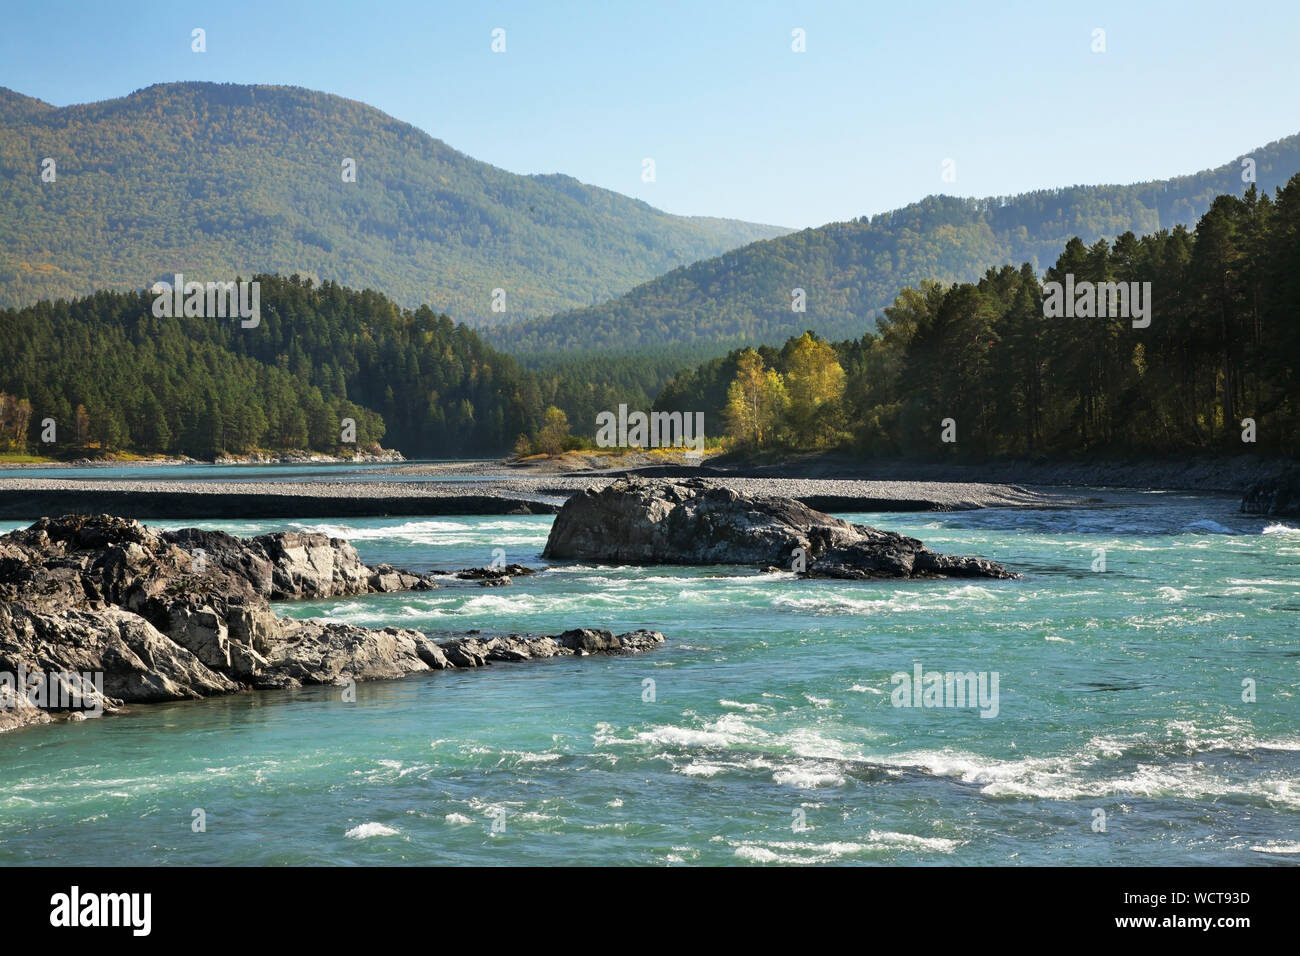 Katun river in Manzherok village. Altai Republic. Russia Stock Photo